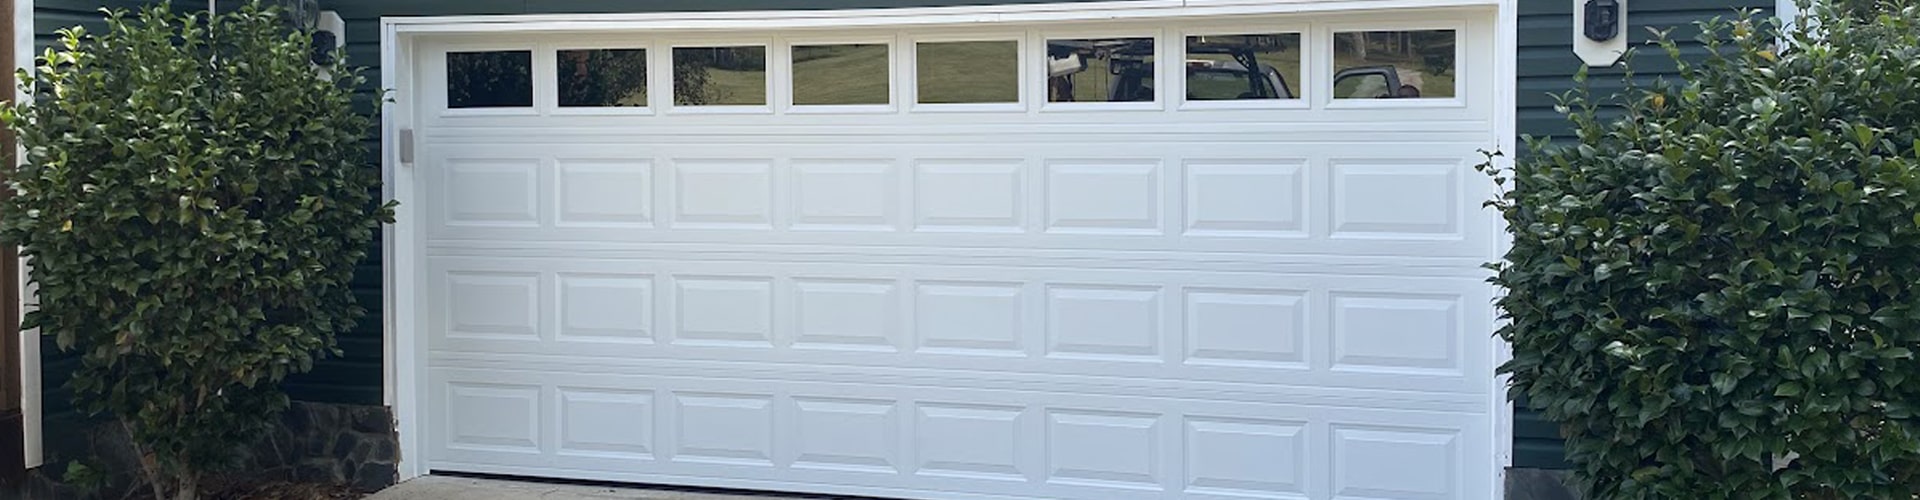 Contact the Best Garage Door Service in Thomaston, GA